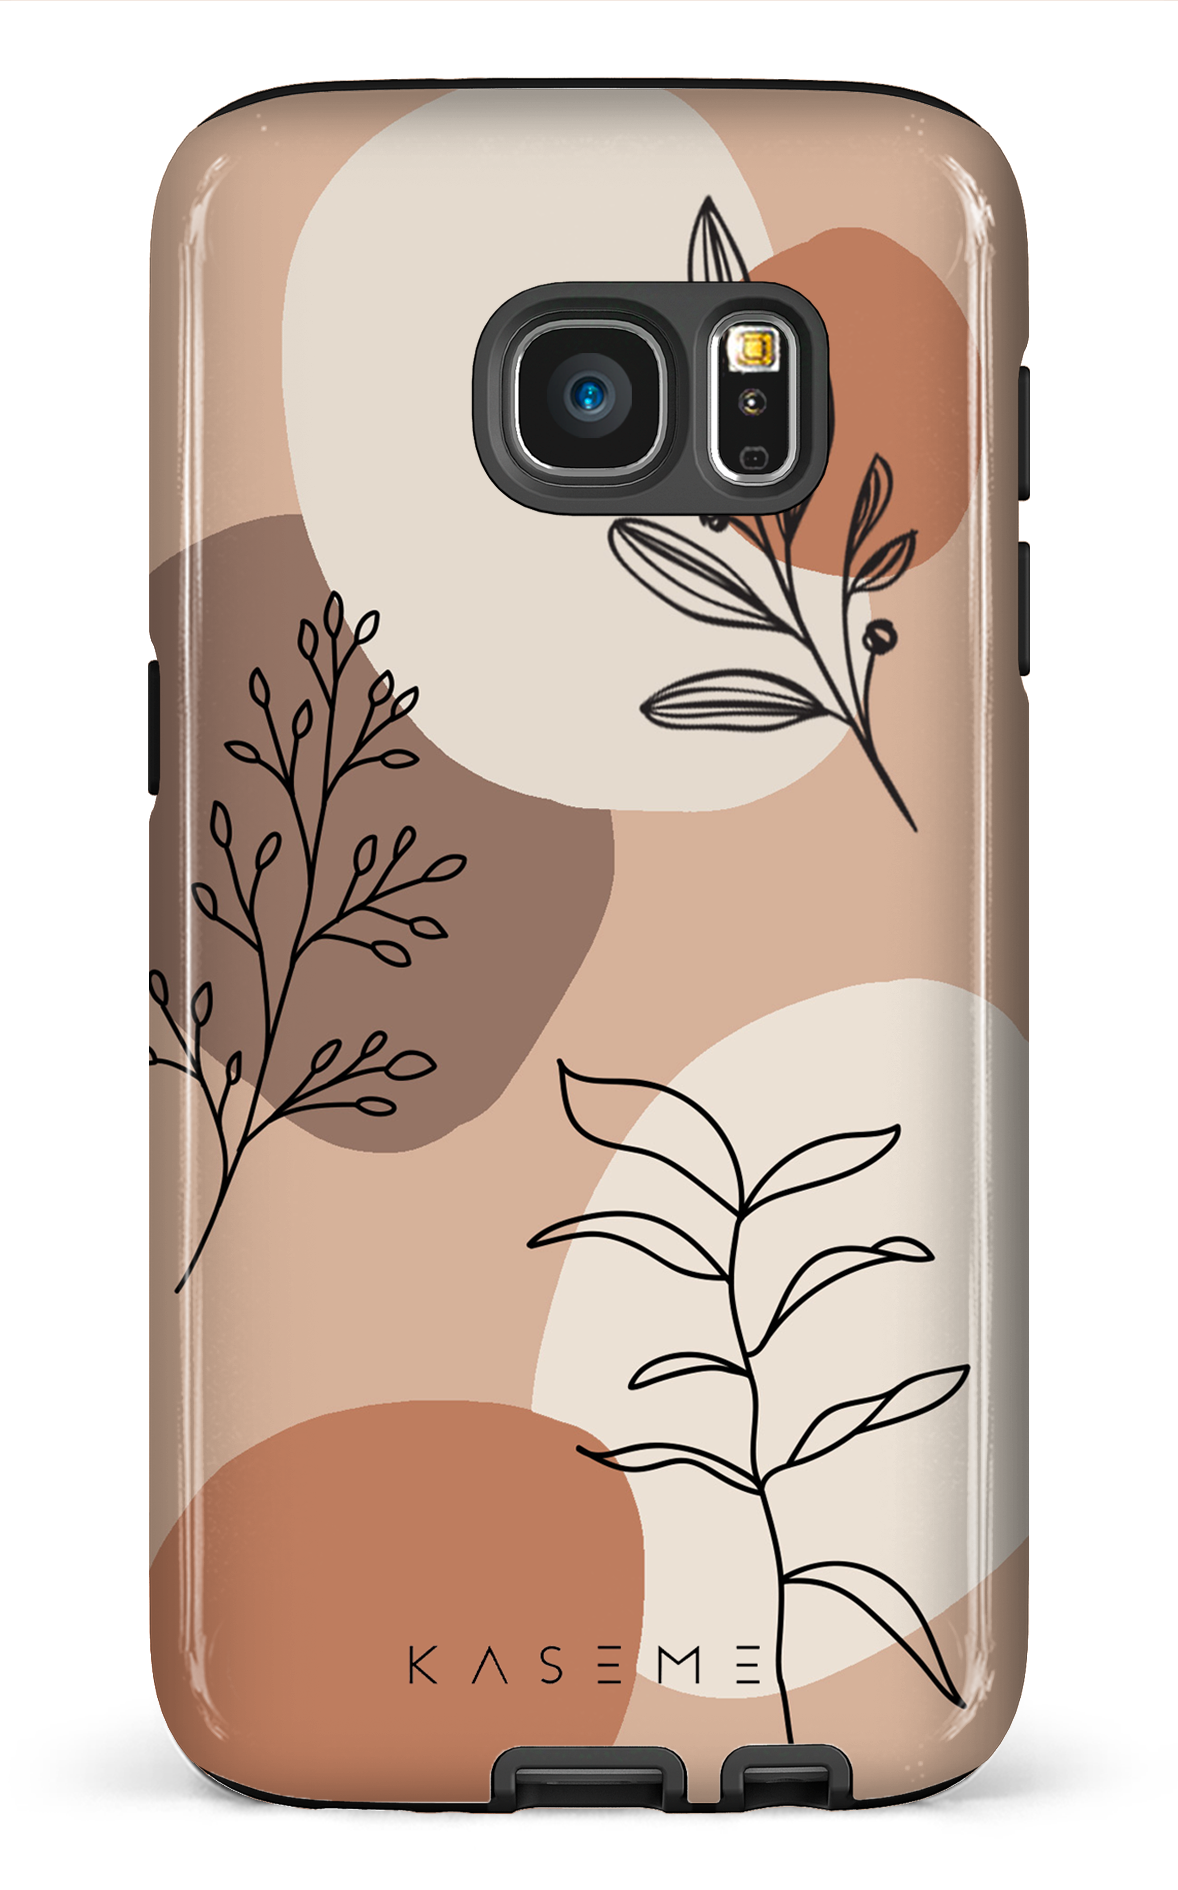 Almond - Galaxy S7